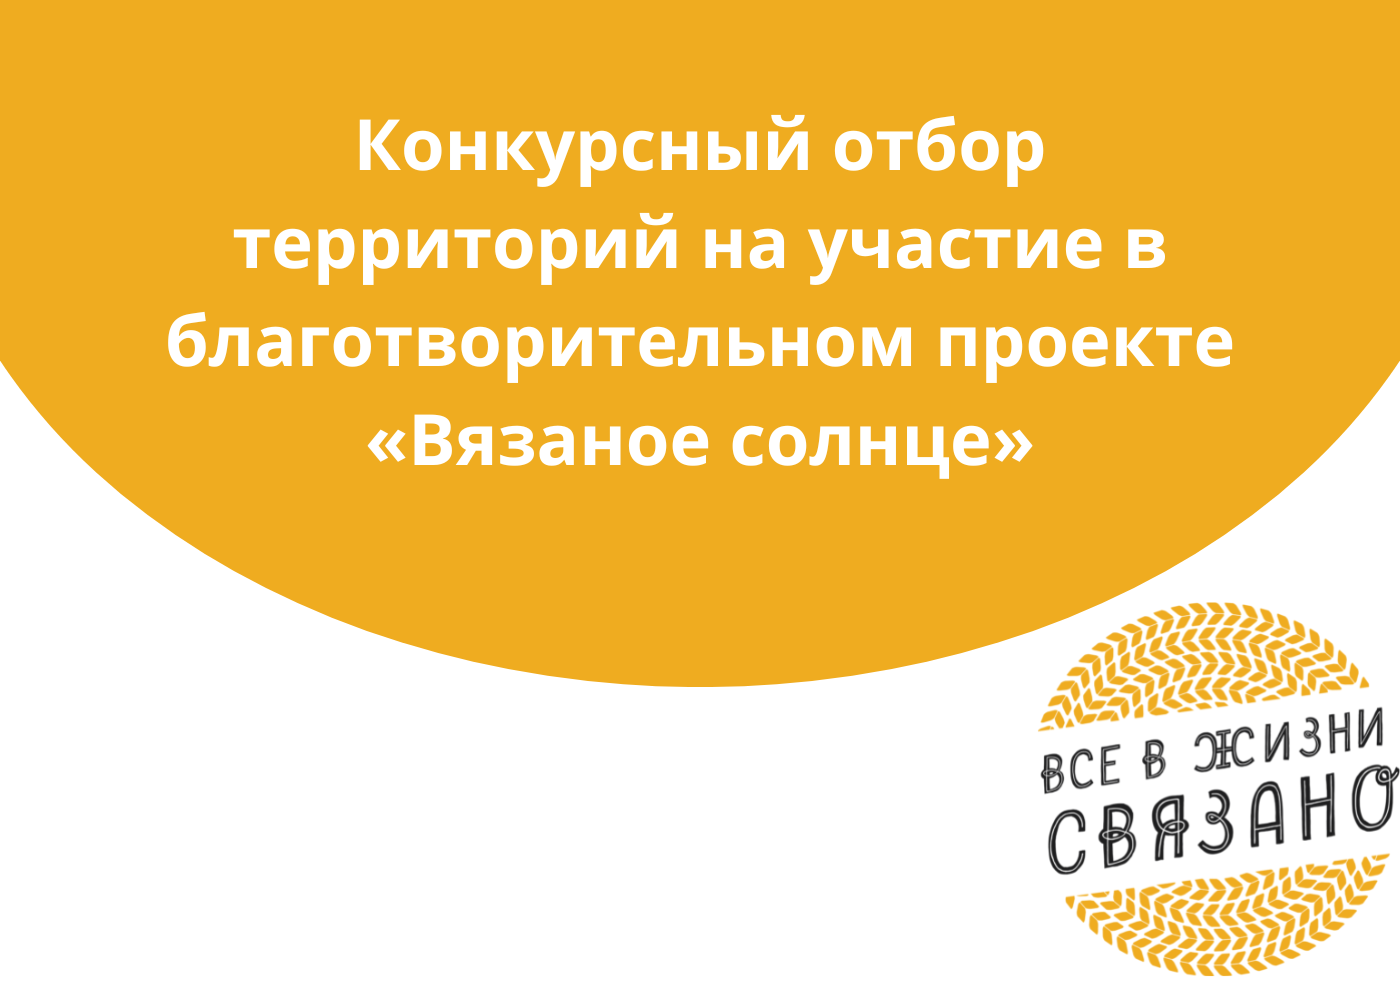 В Самарской области стартовало продолжение благотворительного проекта “Вязаное солнце”